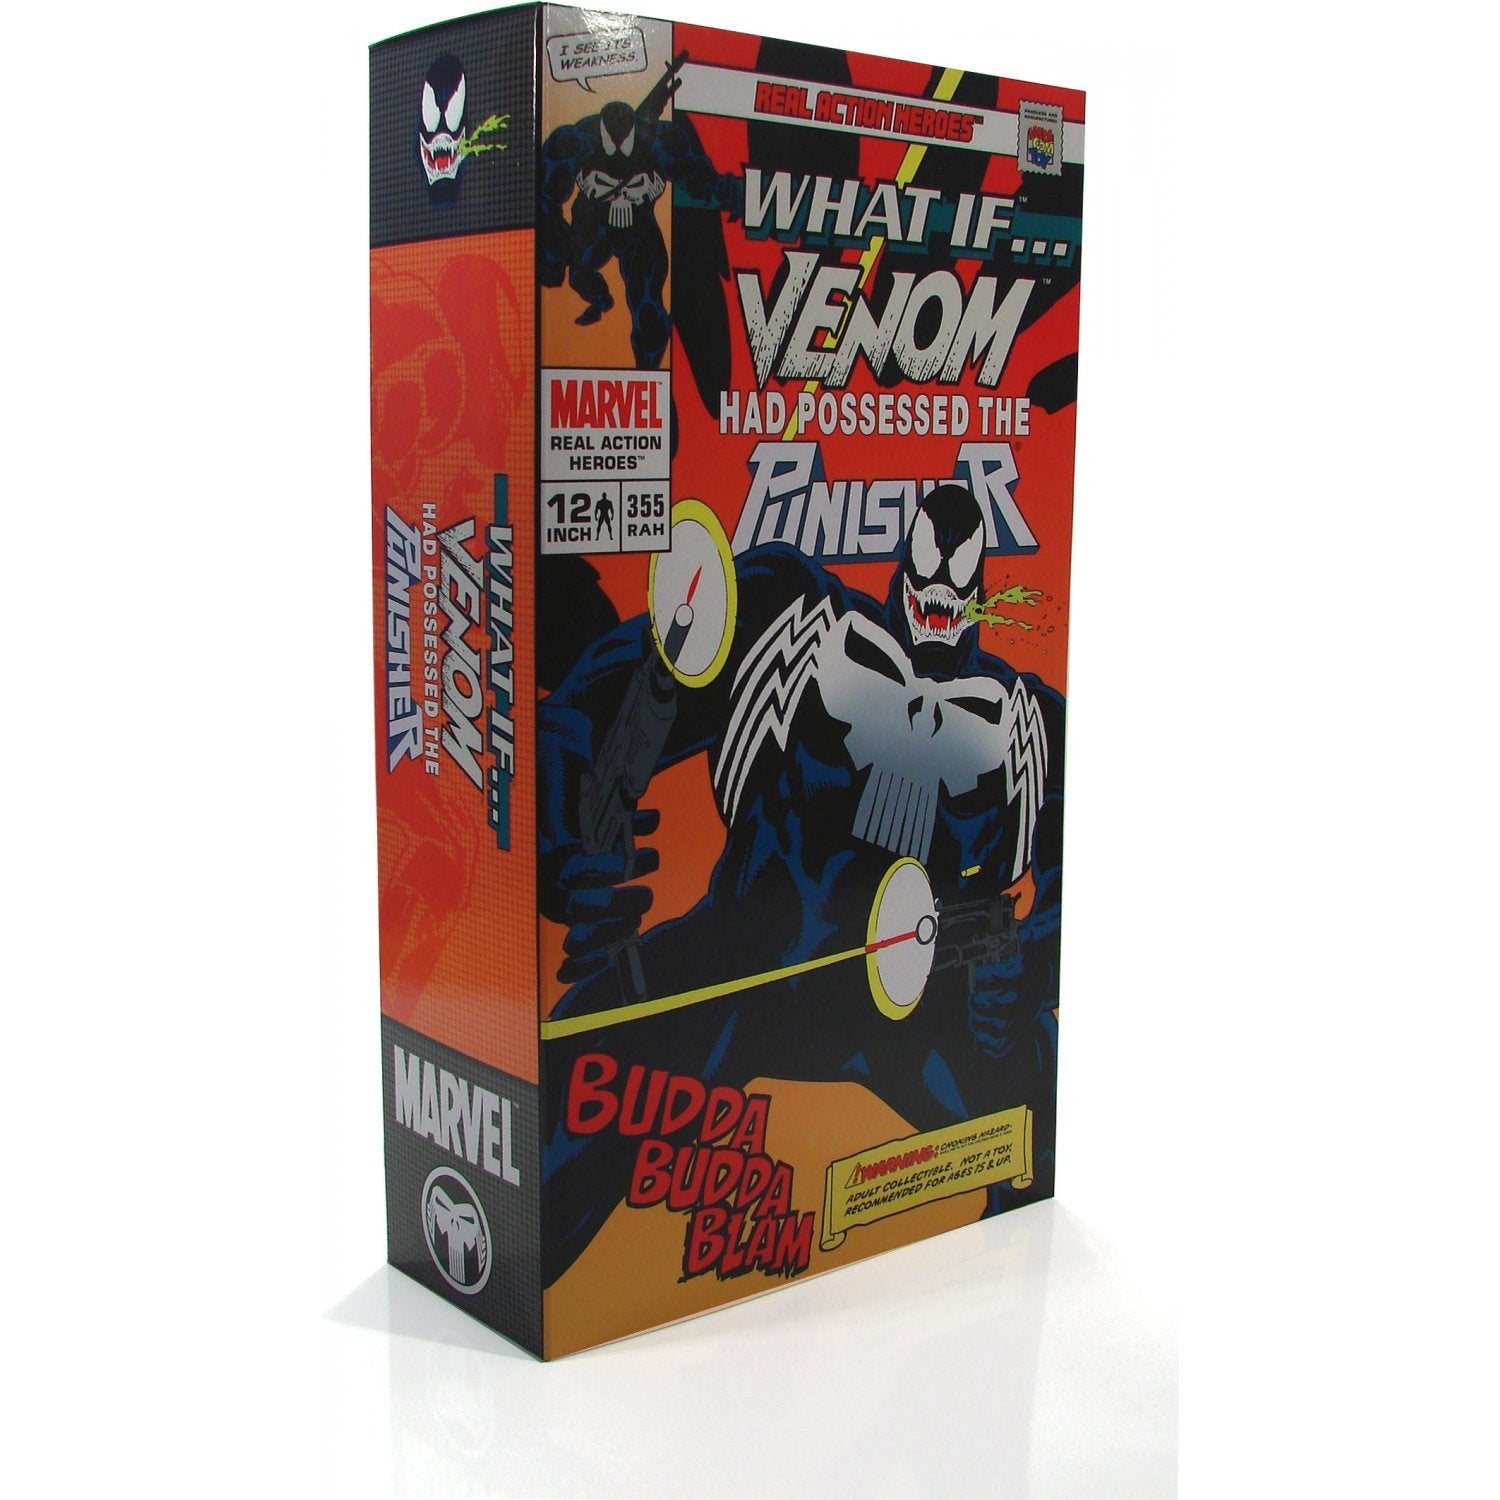 Medicom 1/6 RAH Marvel Venom (Punisher Ver.) 12" Real Action Heroes Action Figure 1